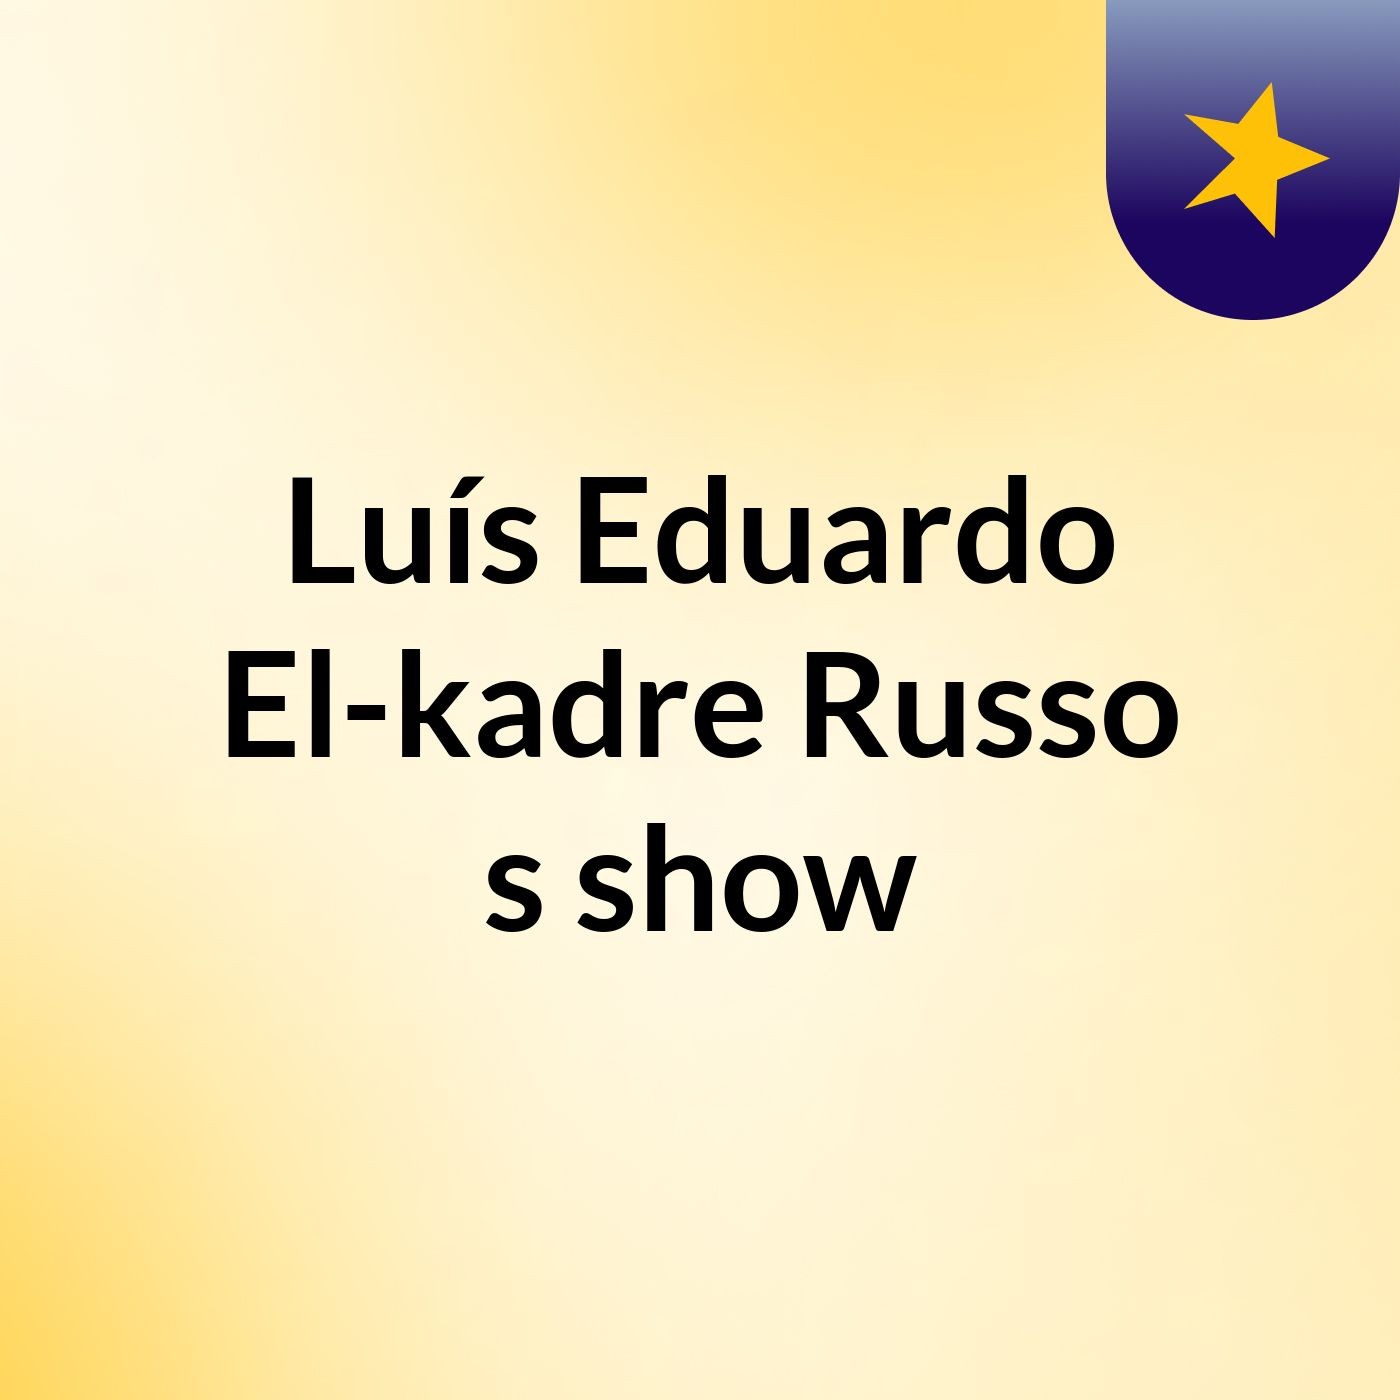 Luís Eduardo El-kadre Russo's show